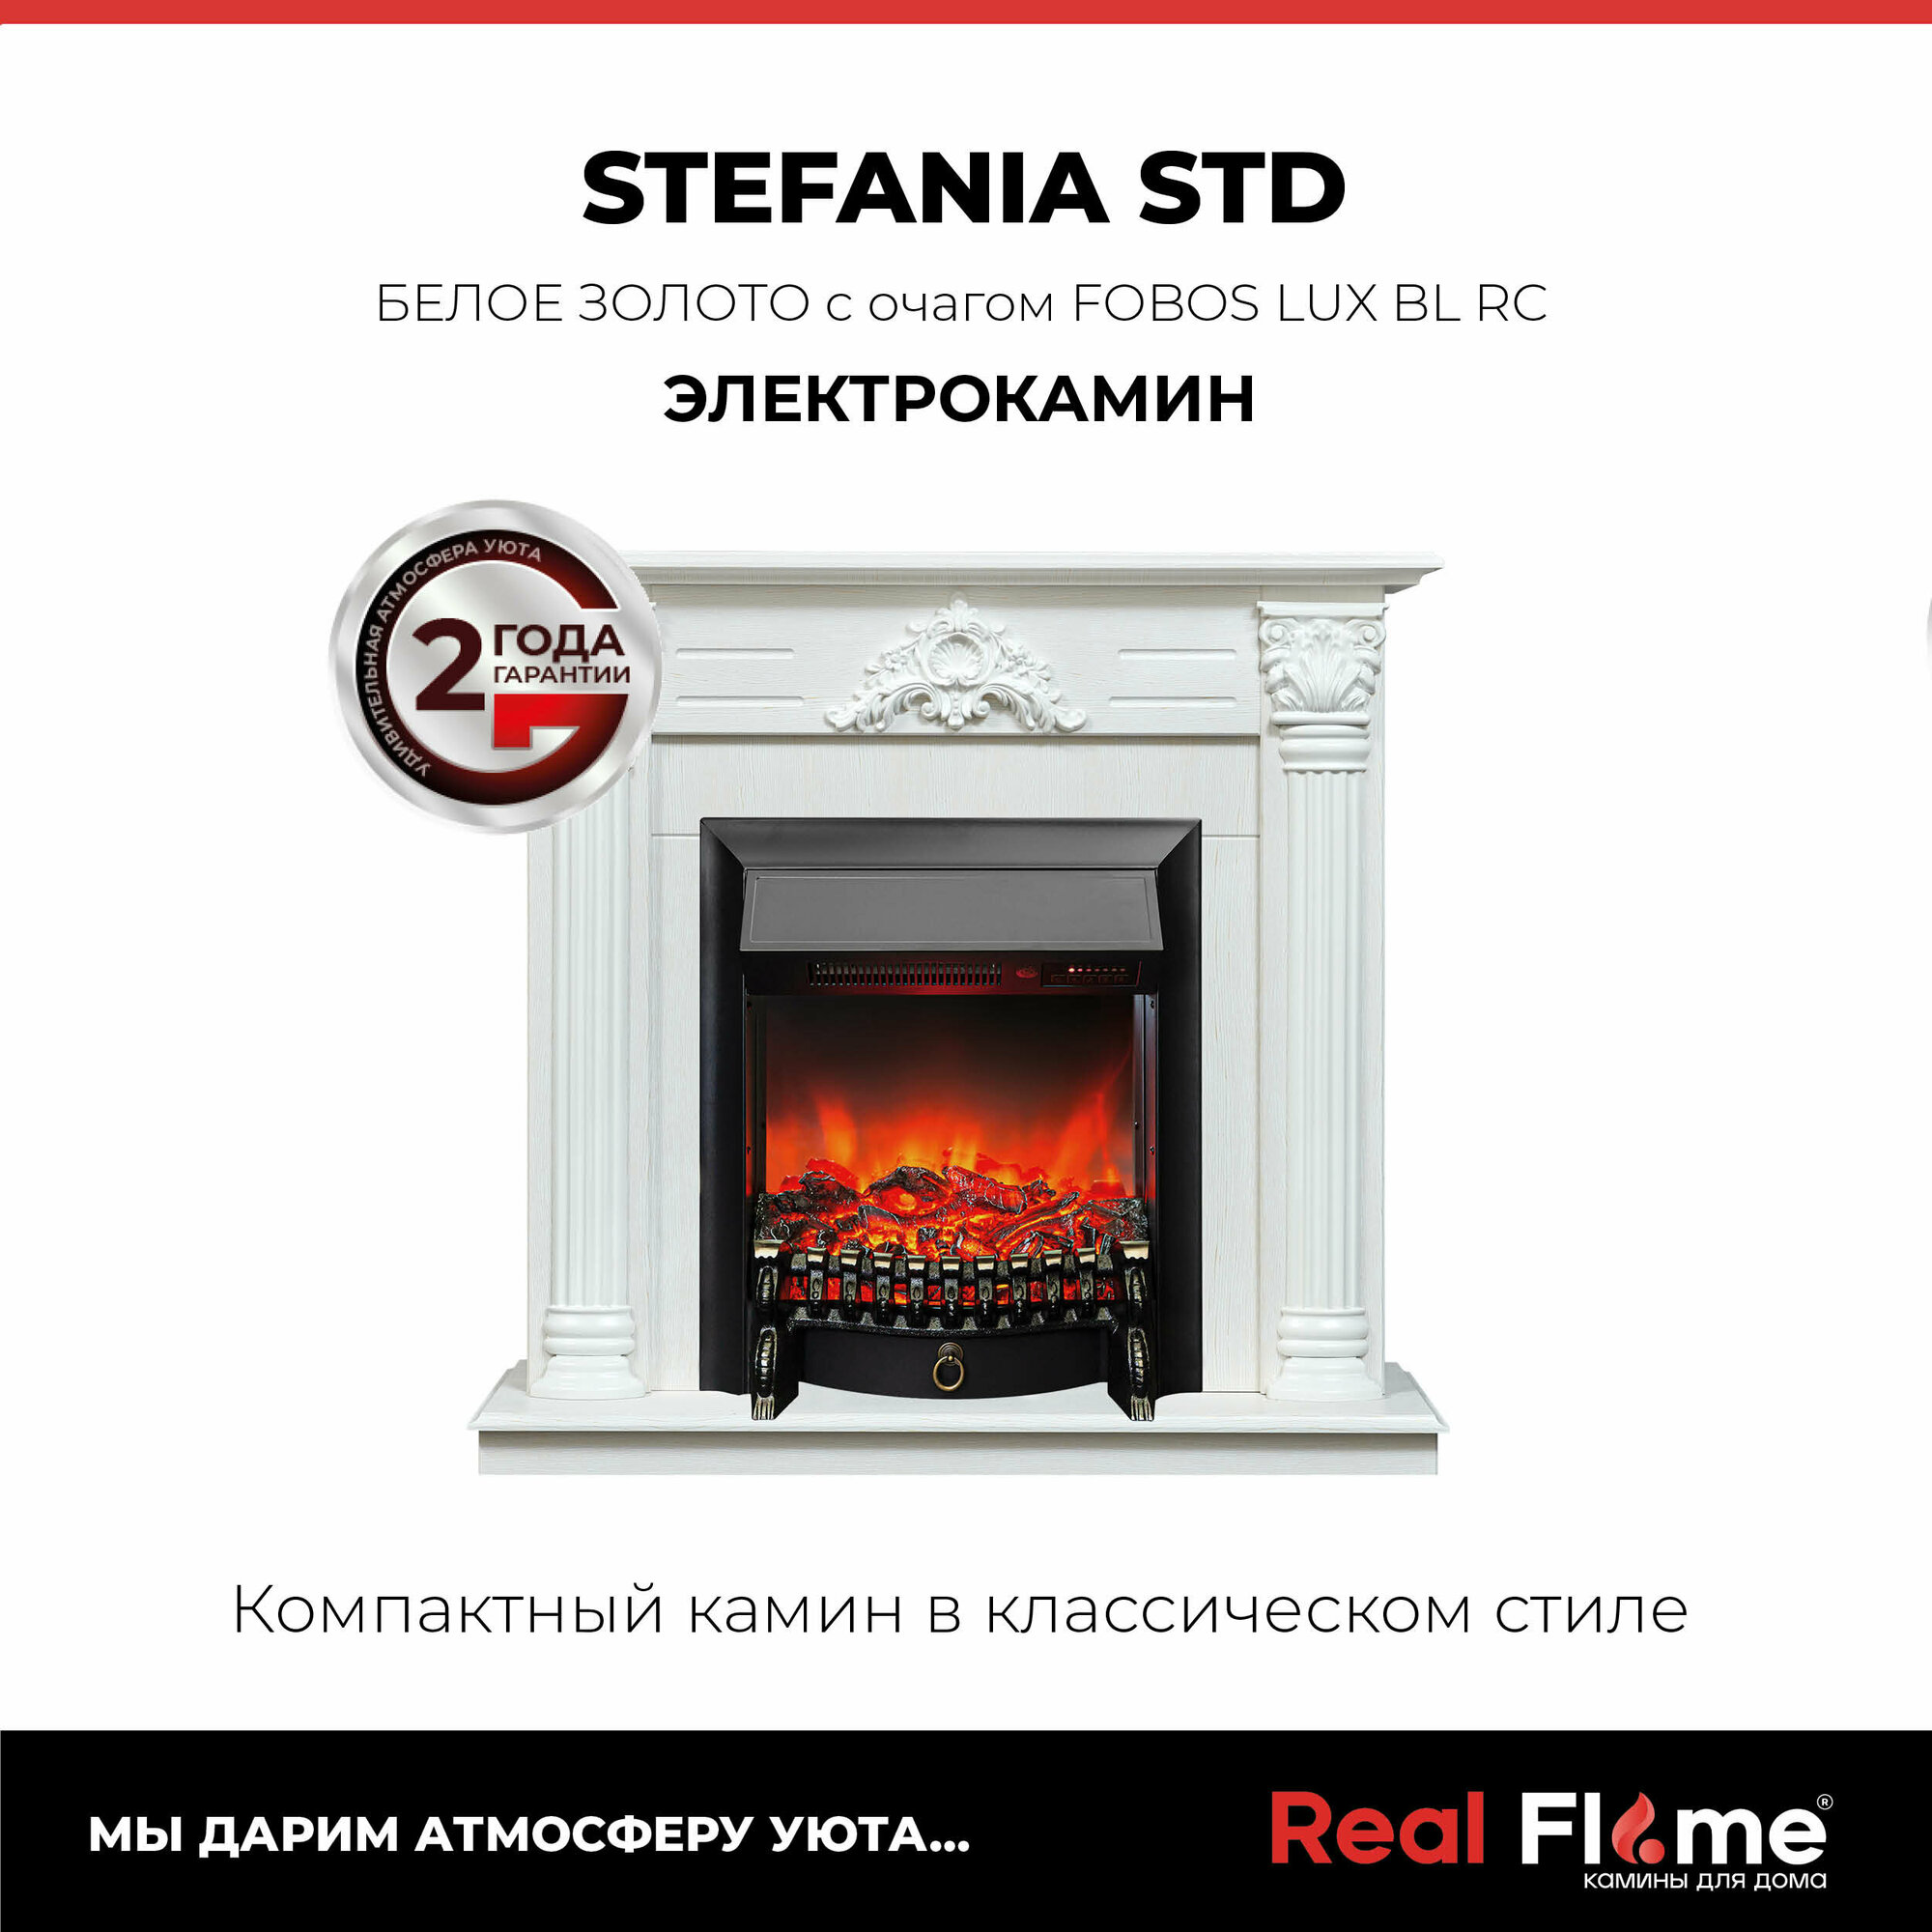 Электрокамин RealFlame Stefania WT с Fobos s Lux BL светлый портал пульт ДУ